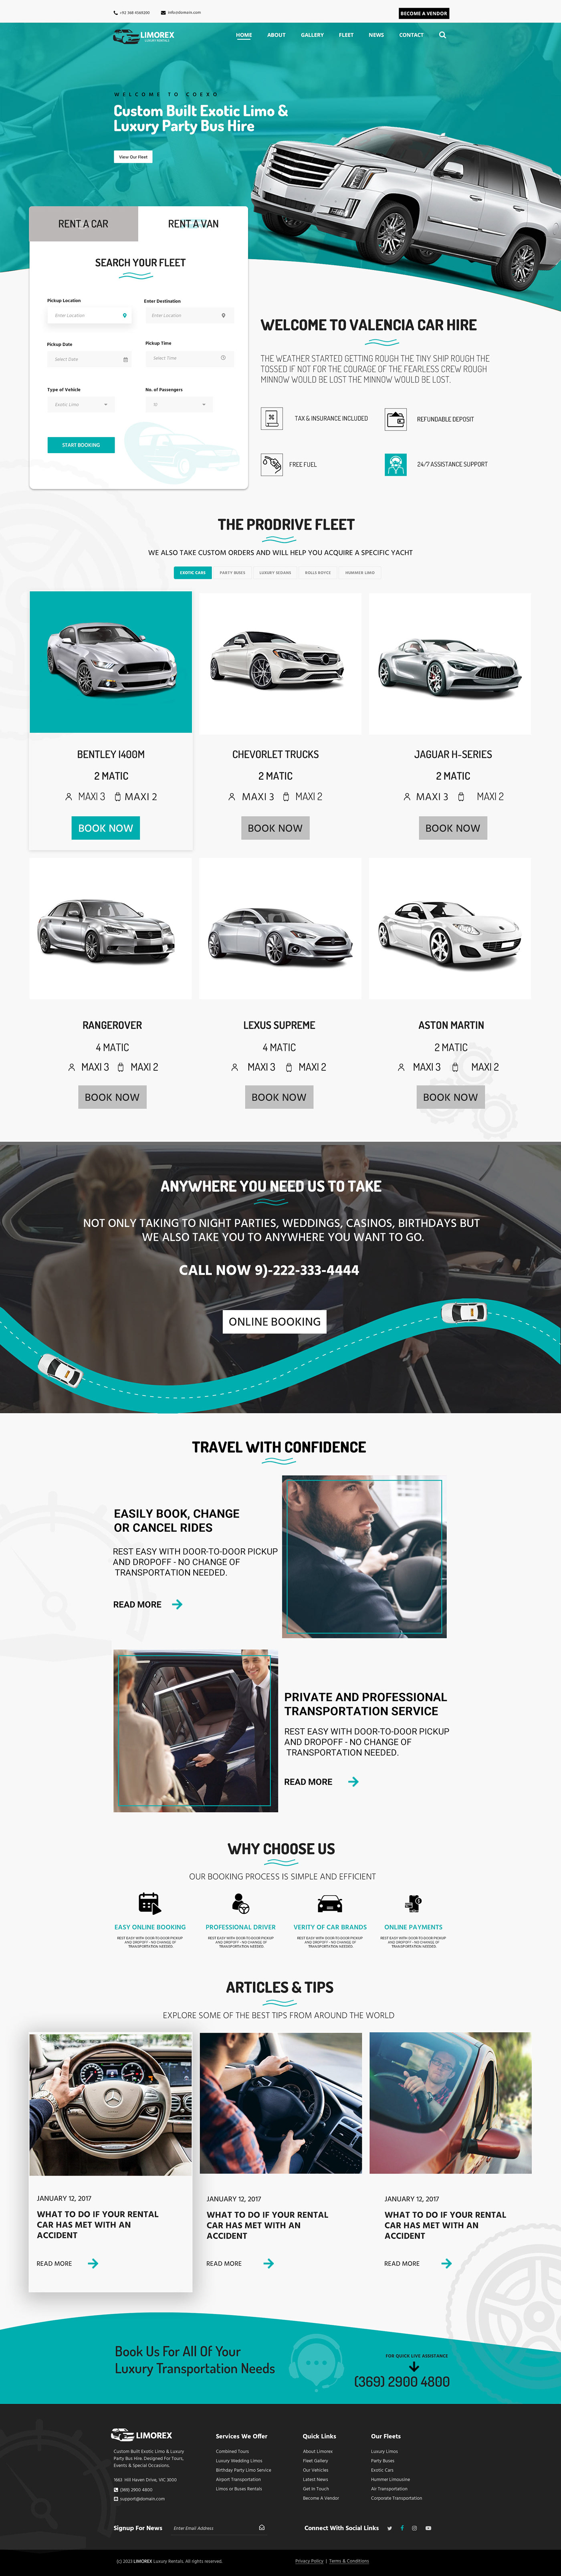 Limo Service Travel rental car UI/UX landing page UX design Website